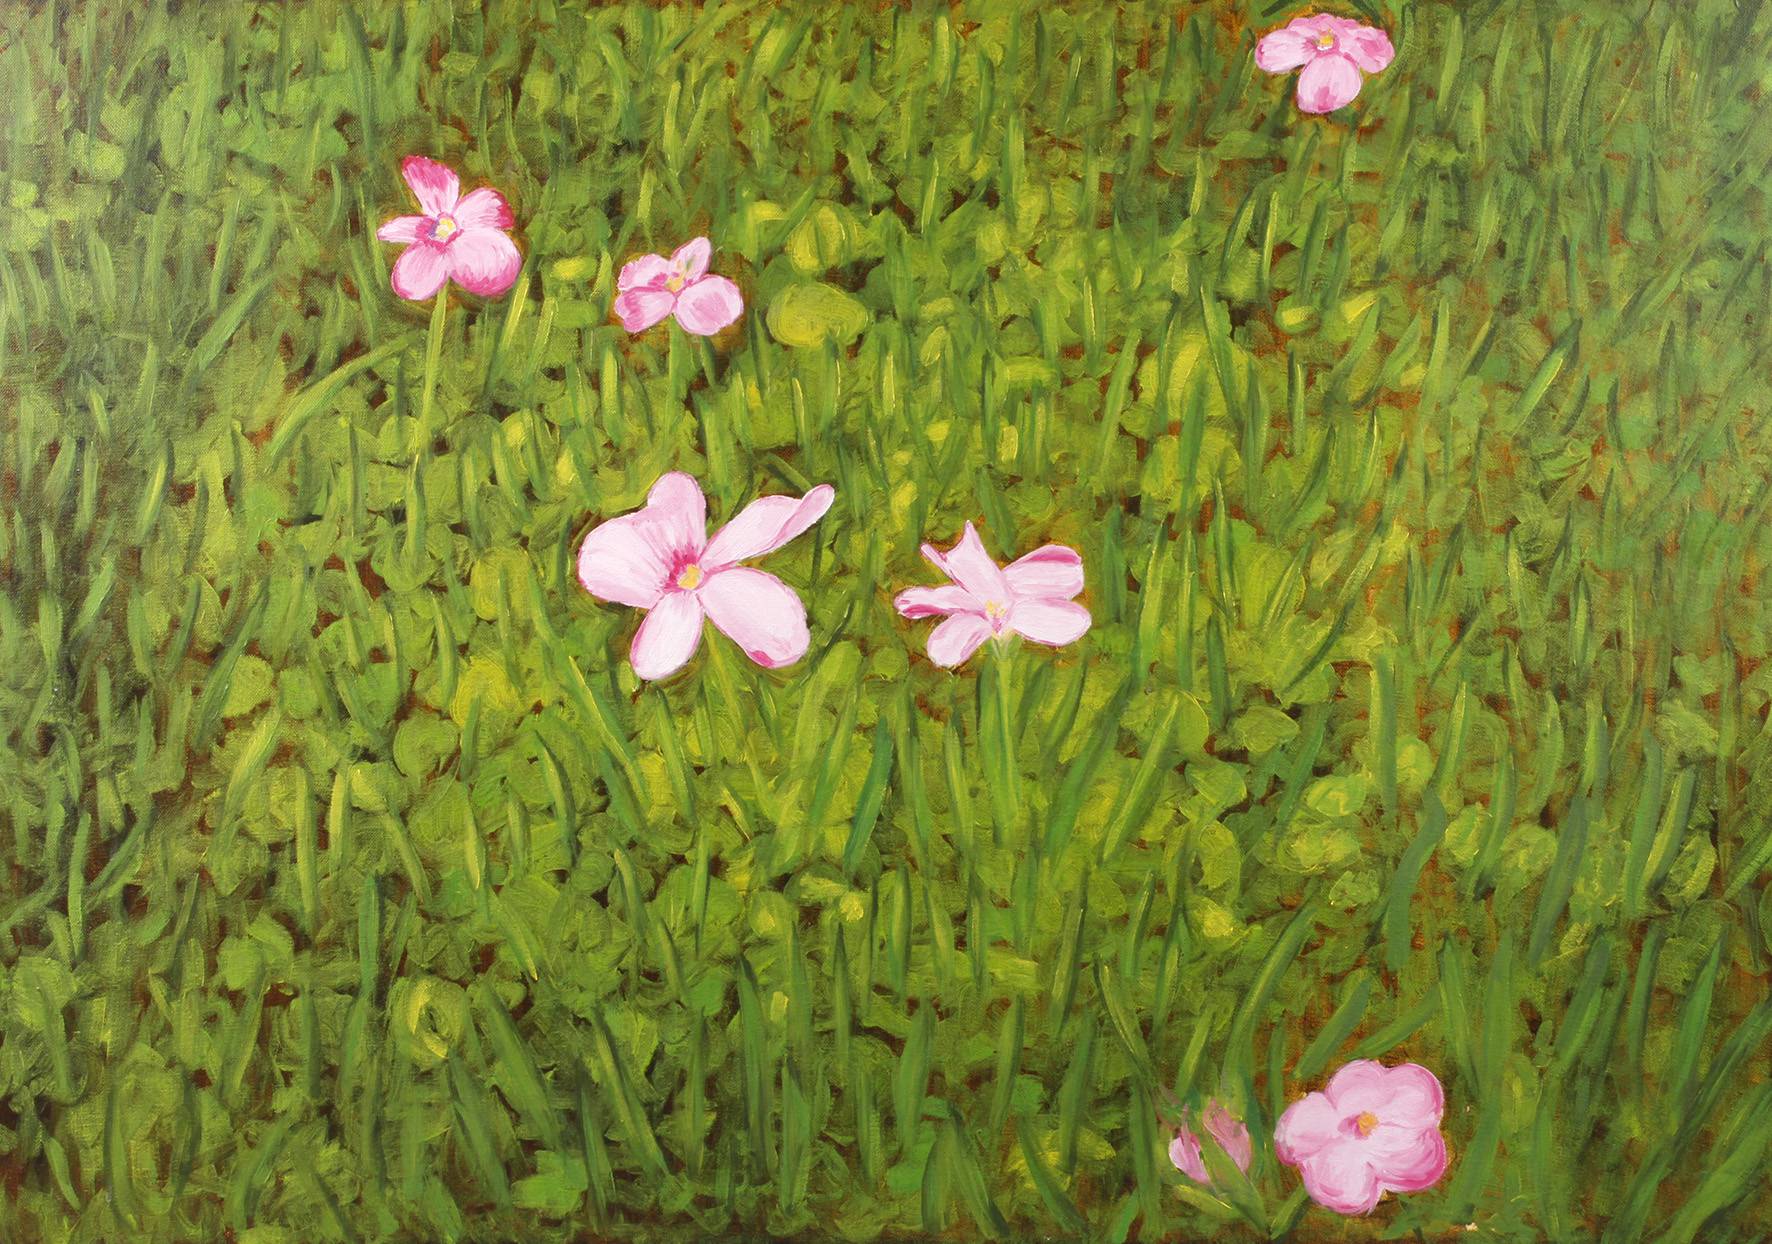 Sabine Preis, ”Grüne Wiese mit rosa Blümchen”